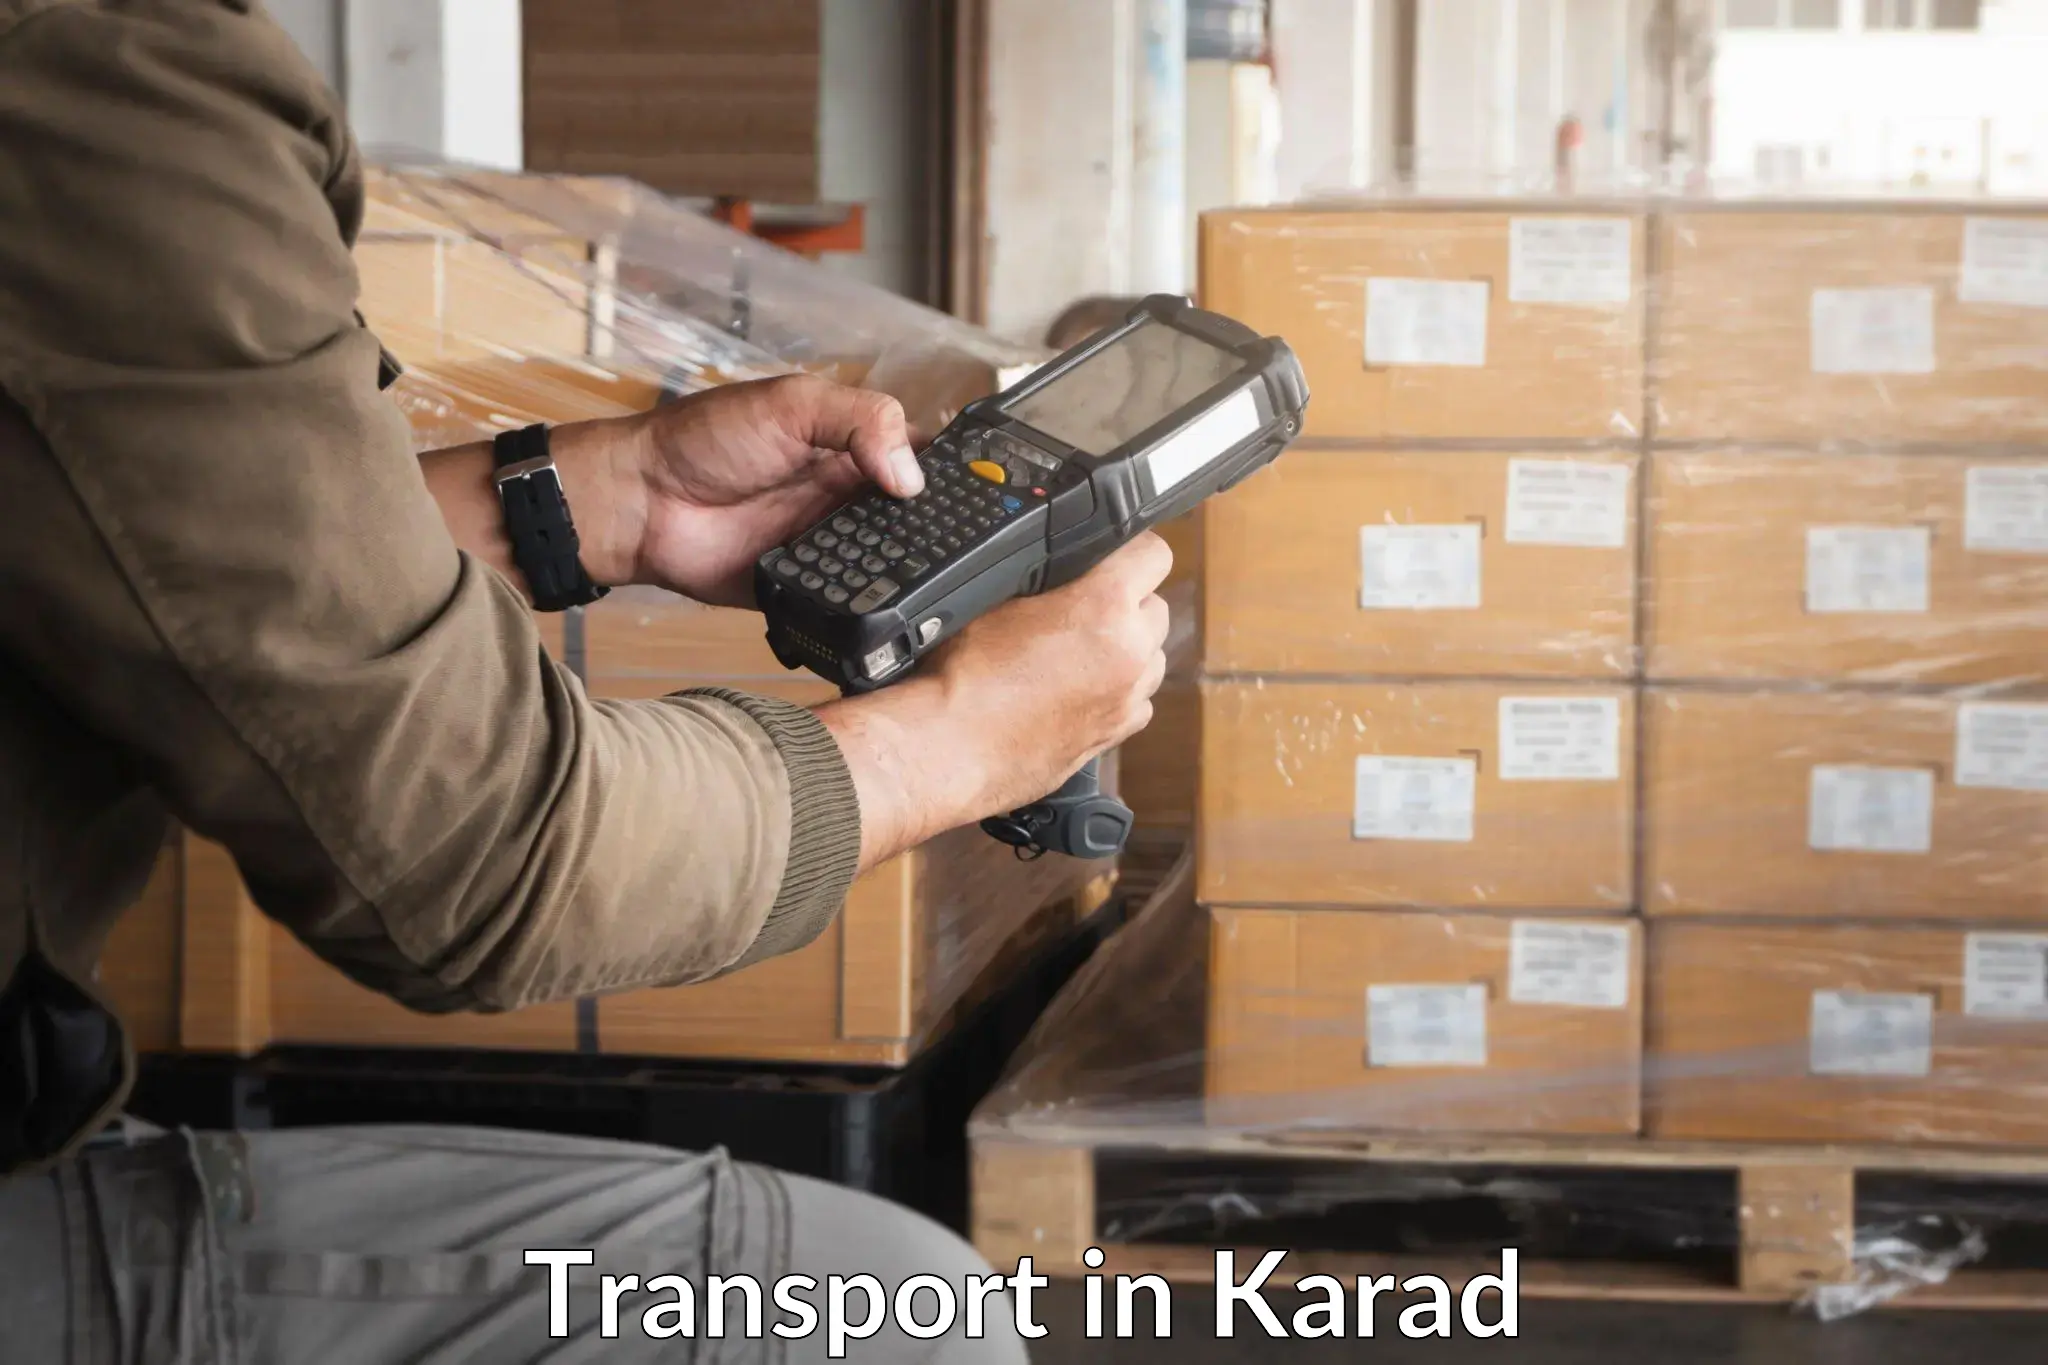 Online transport service in Karad